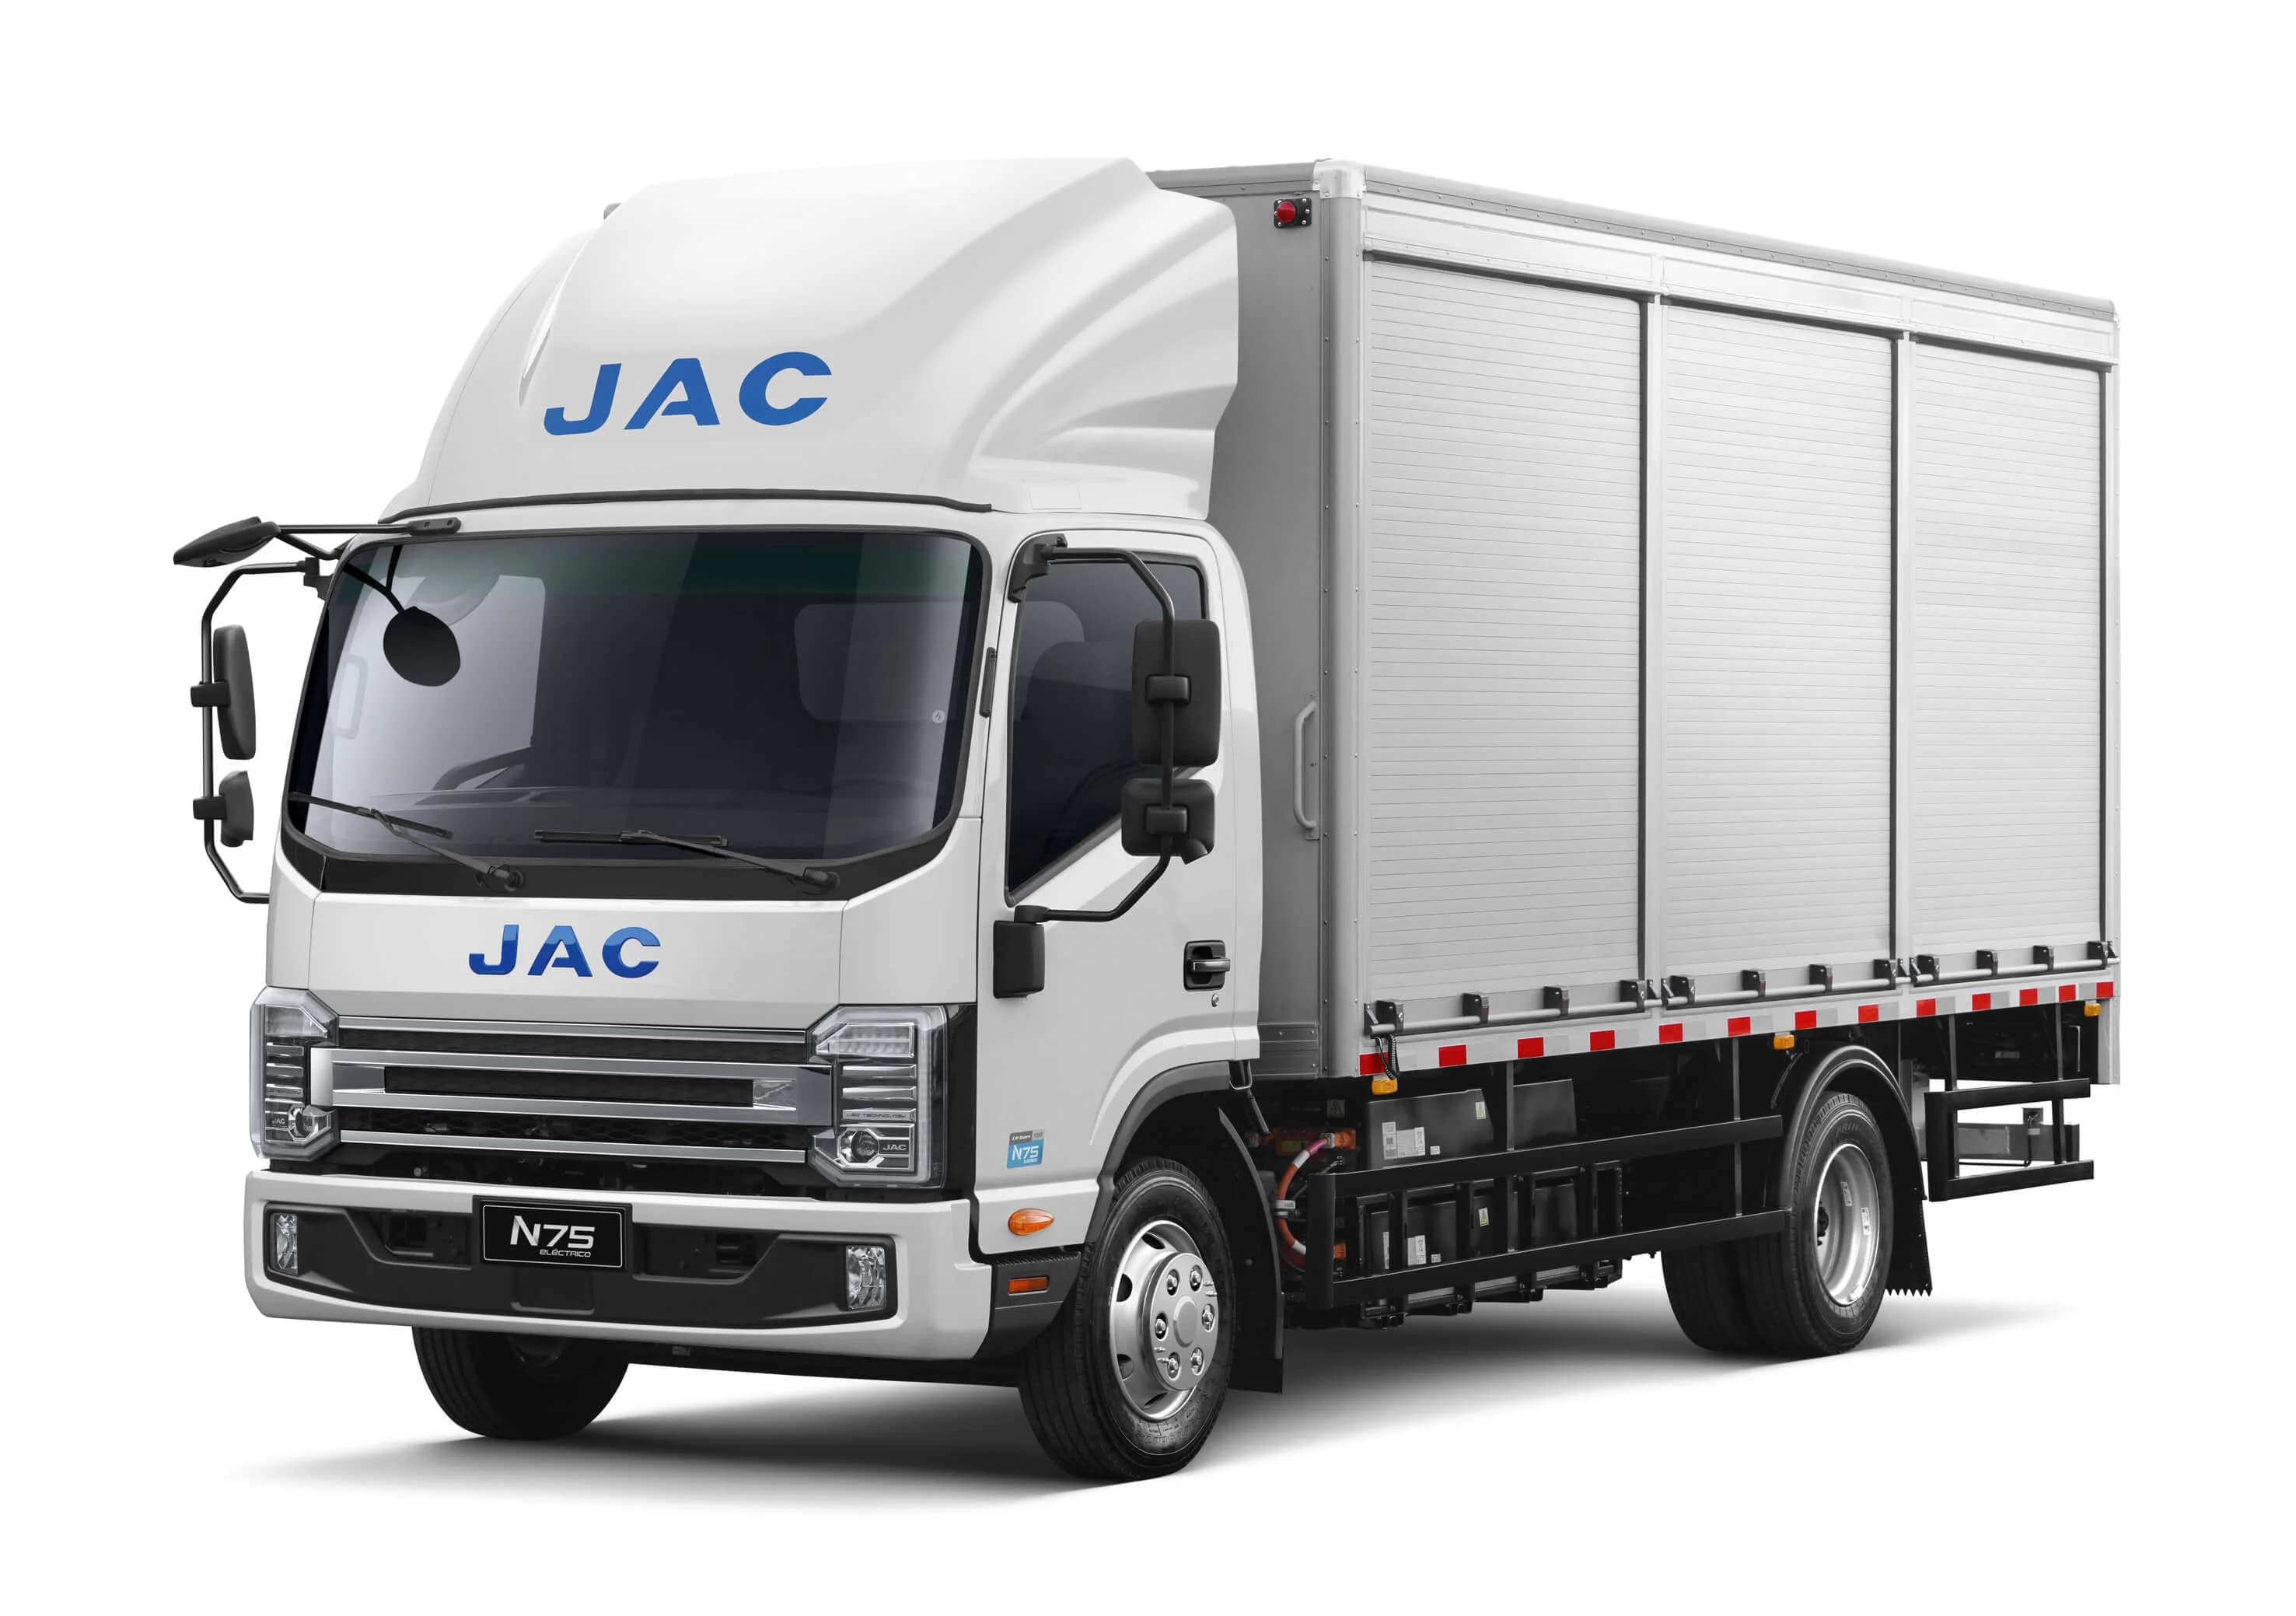 Dercomaq lanza camión mediano y eléctrico JAC N75 Urban